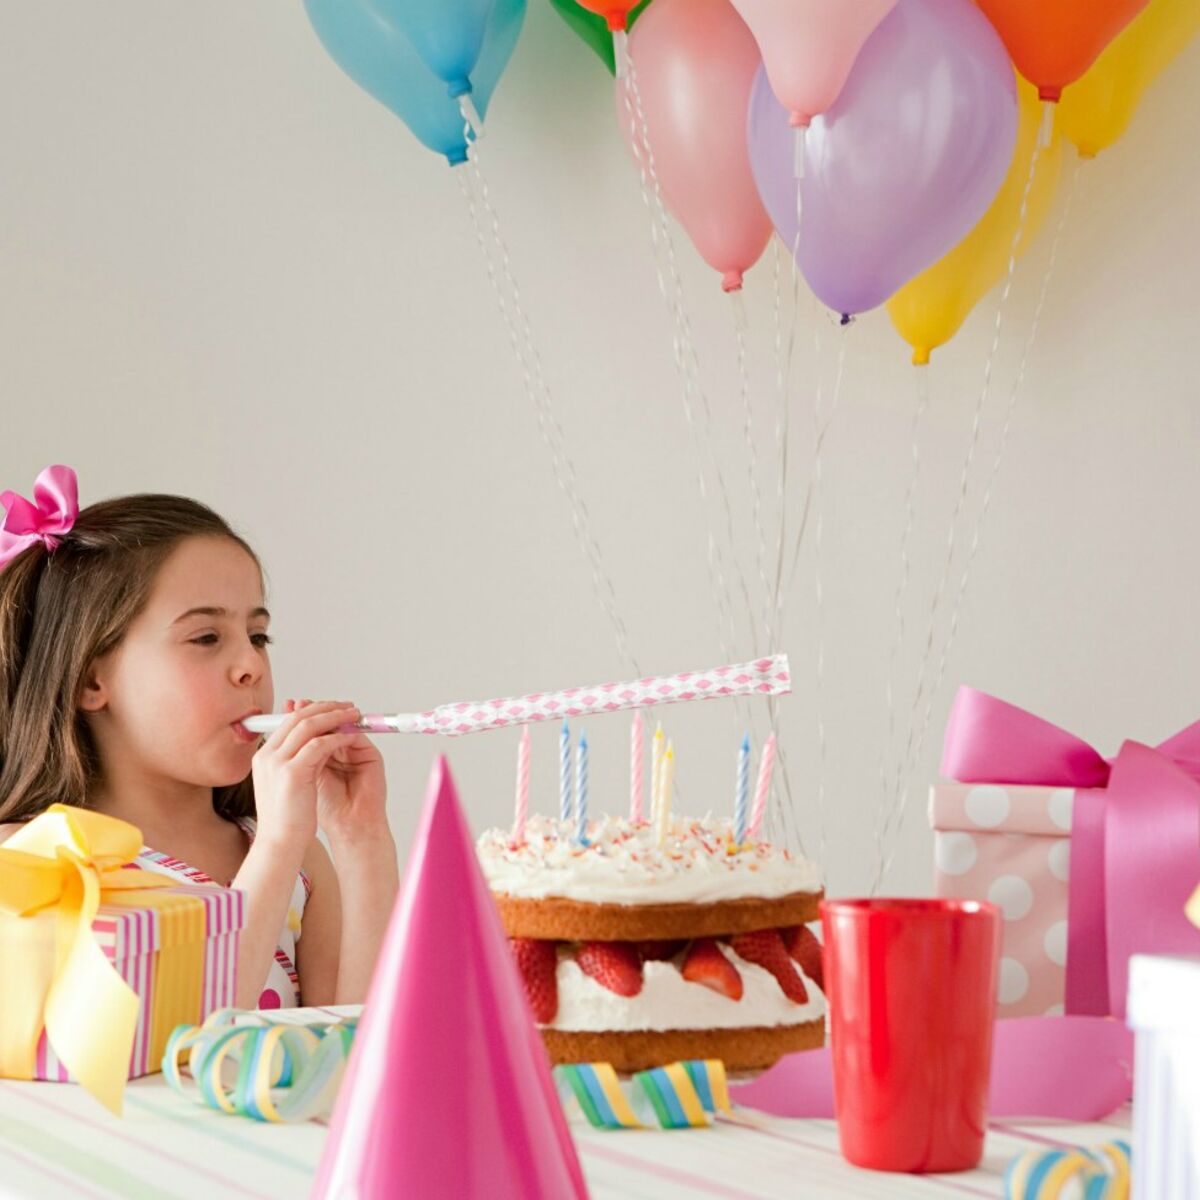 5 Ballons Confettis Or pour l'anniversaire de votre enfant - Annikids